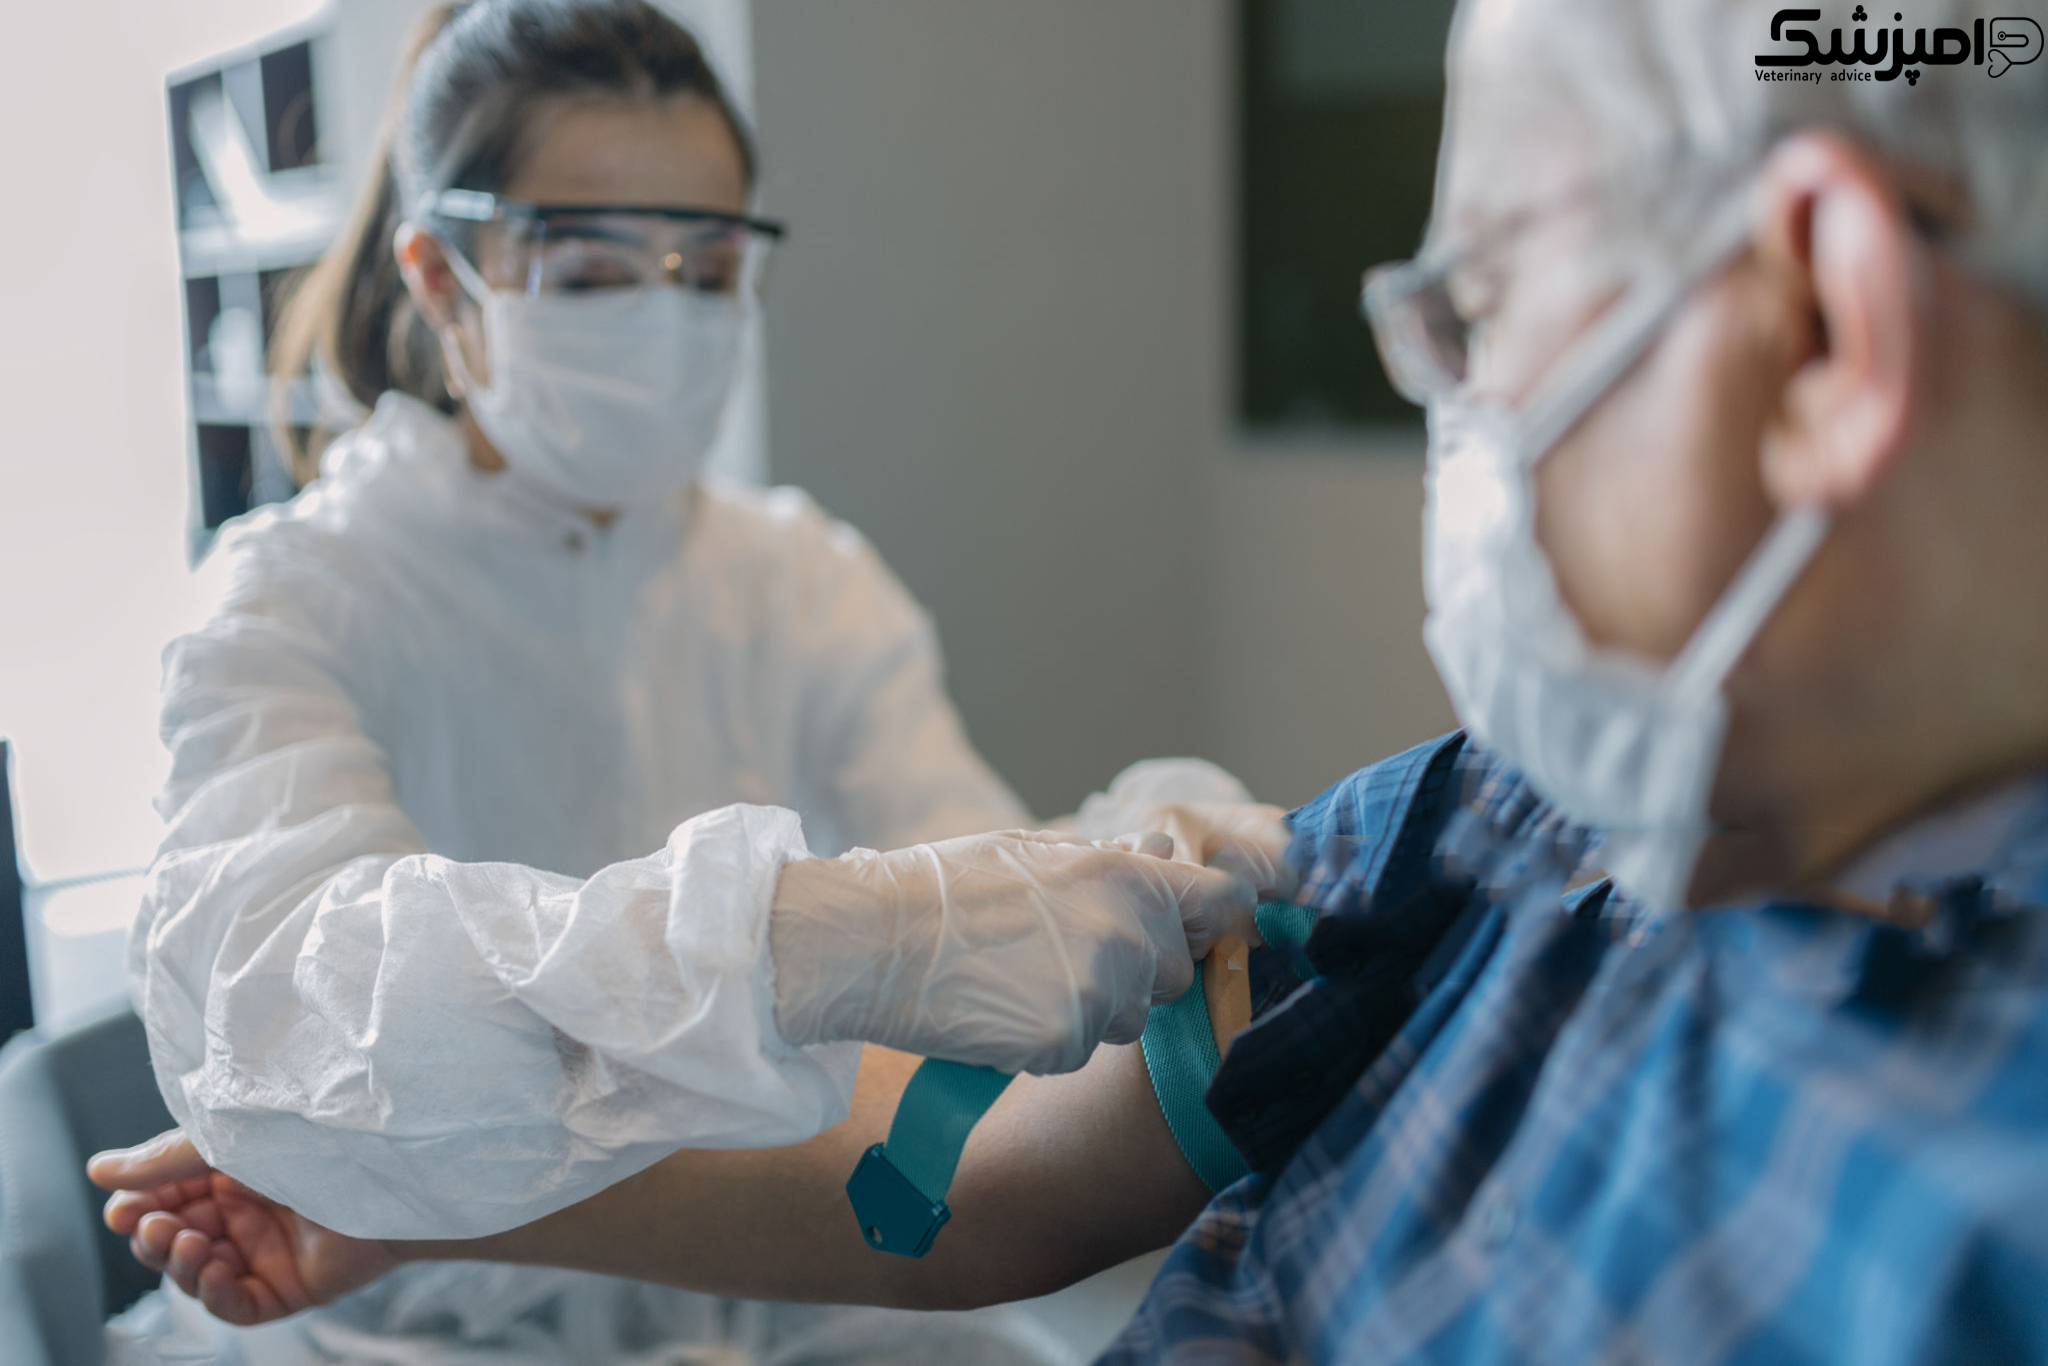 حضور دامپزشکان آمریکایی در اجرای عملیات واکسیناسیون بر علیه کووید۱۹